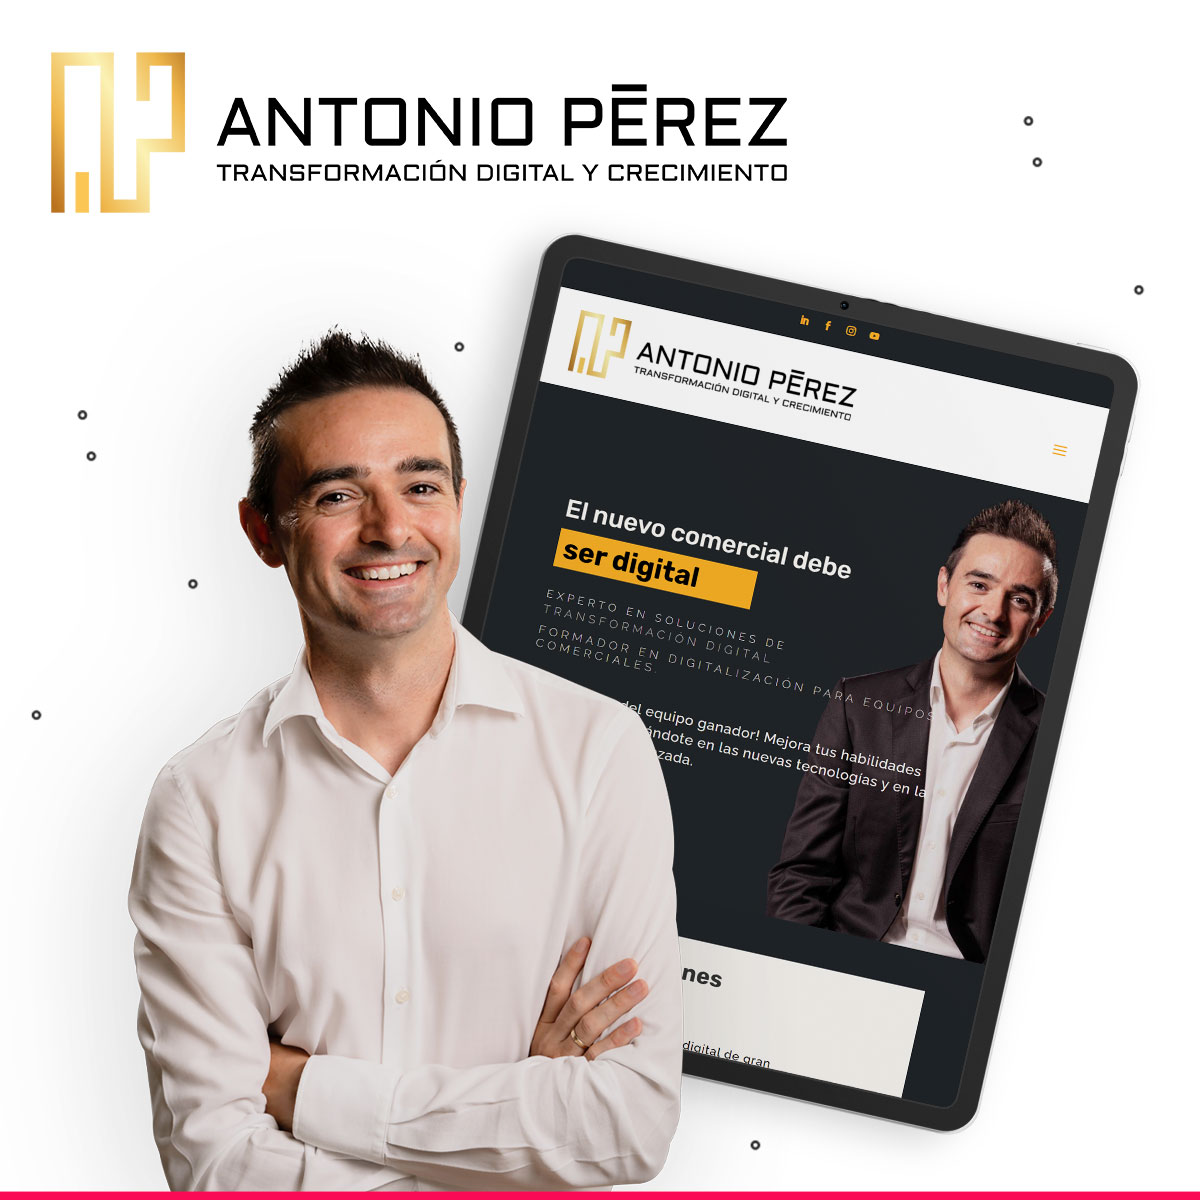 Marca personal de Antonio Pérez y estrategia de comunicación y marketing